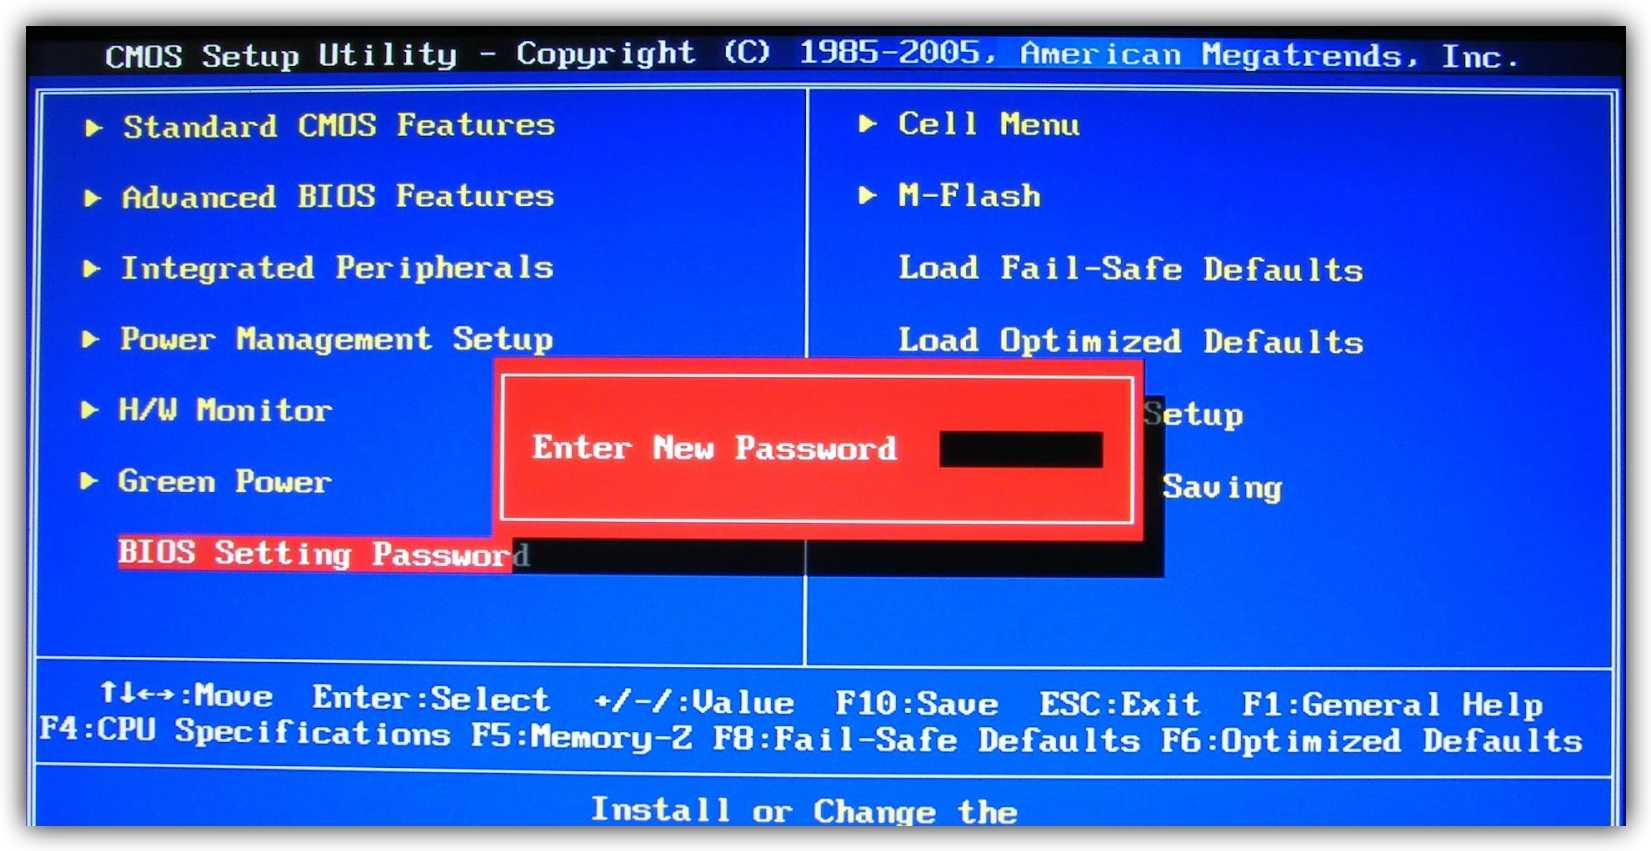 Что делать, если забыл пароль от windows 10 или 7 - разблокировка, сброс и восстановление учётной записи администратора на компьютере или ноутбуке